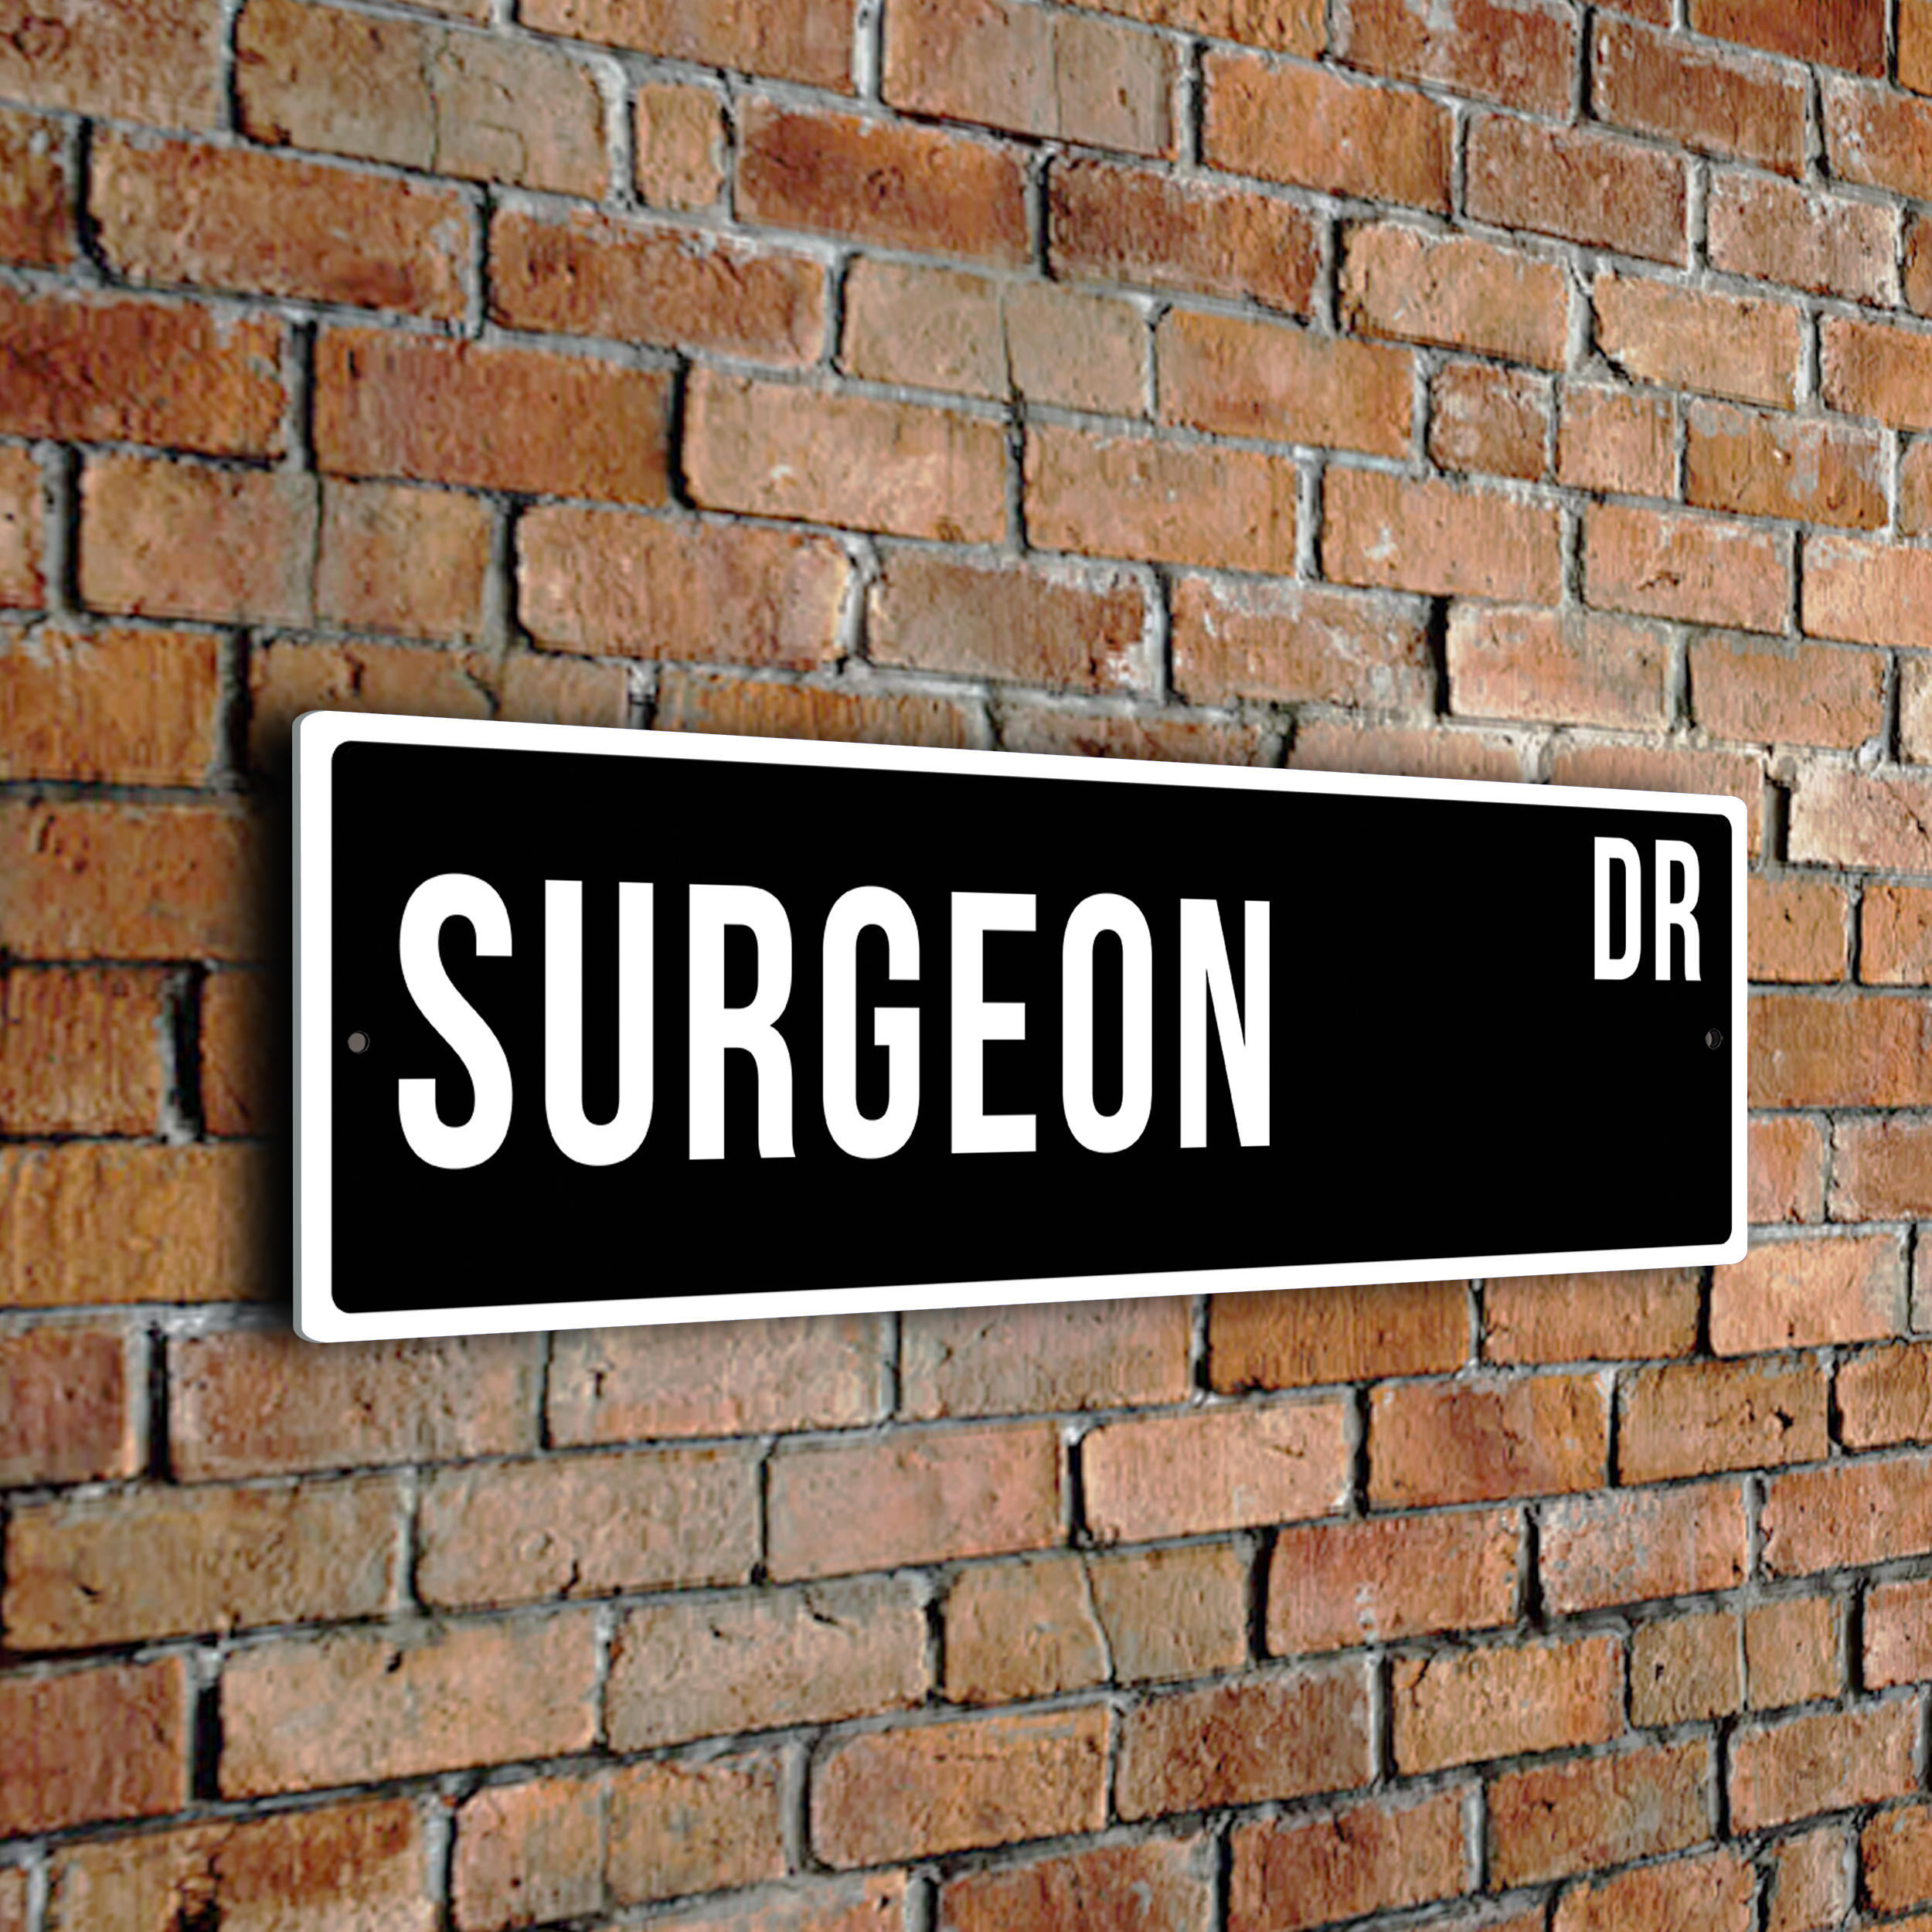 Surgeon street sign